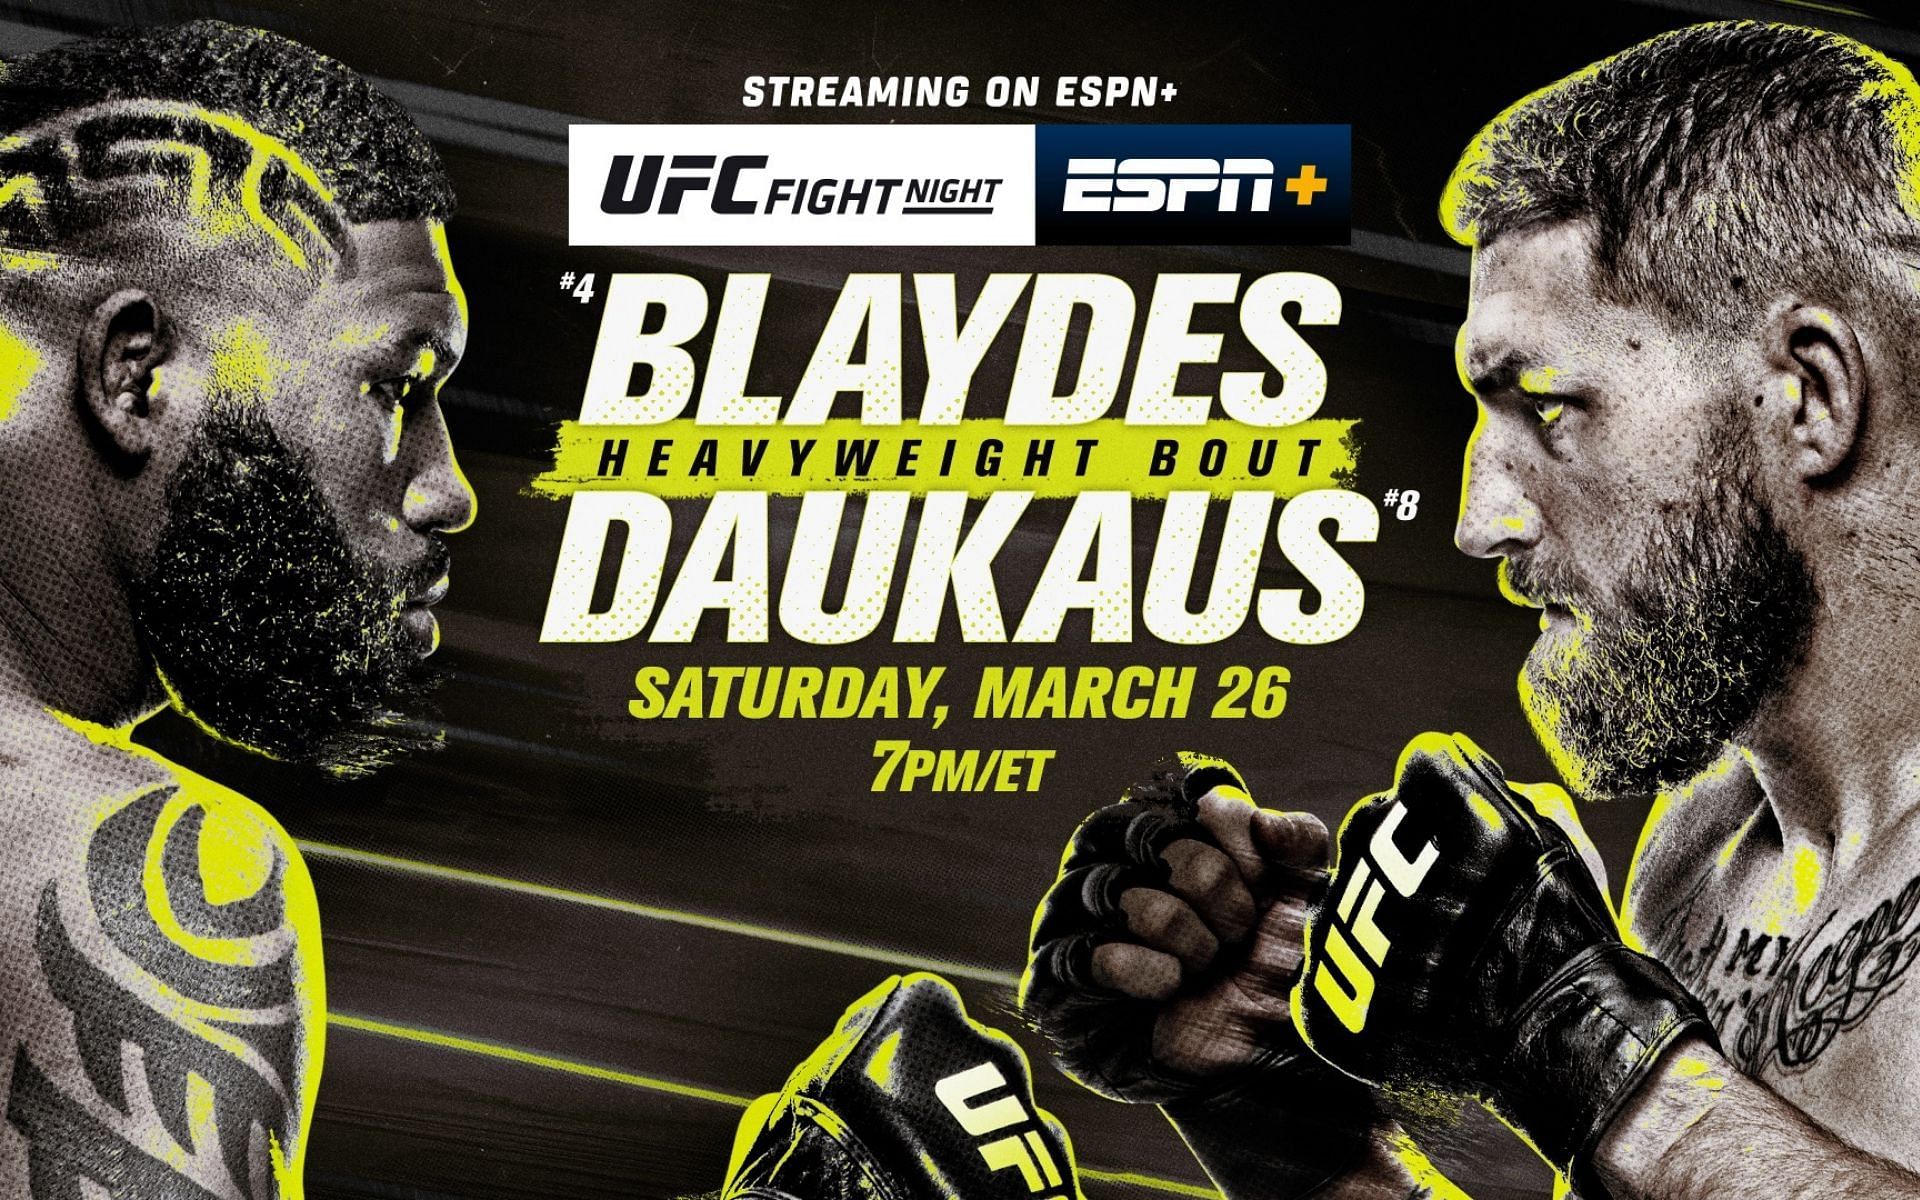 UFC Fight Night: Blaydes vs. Daukaus poster [Image courtesy @ESPNPR on Twitter]